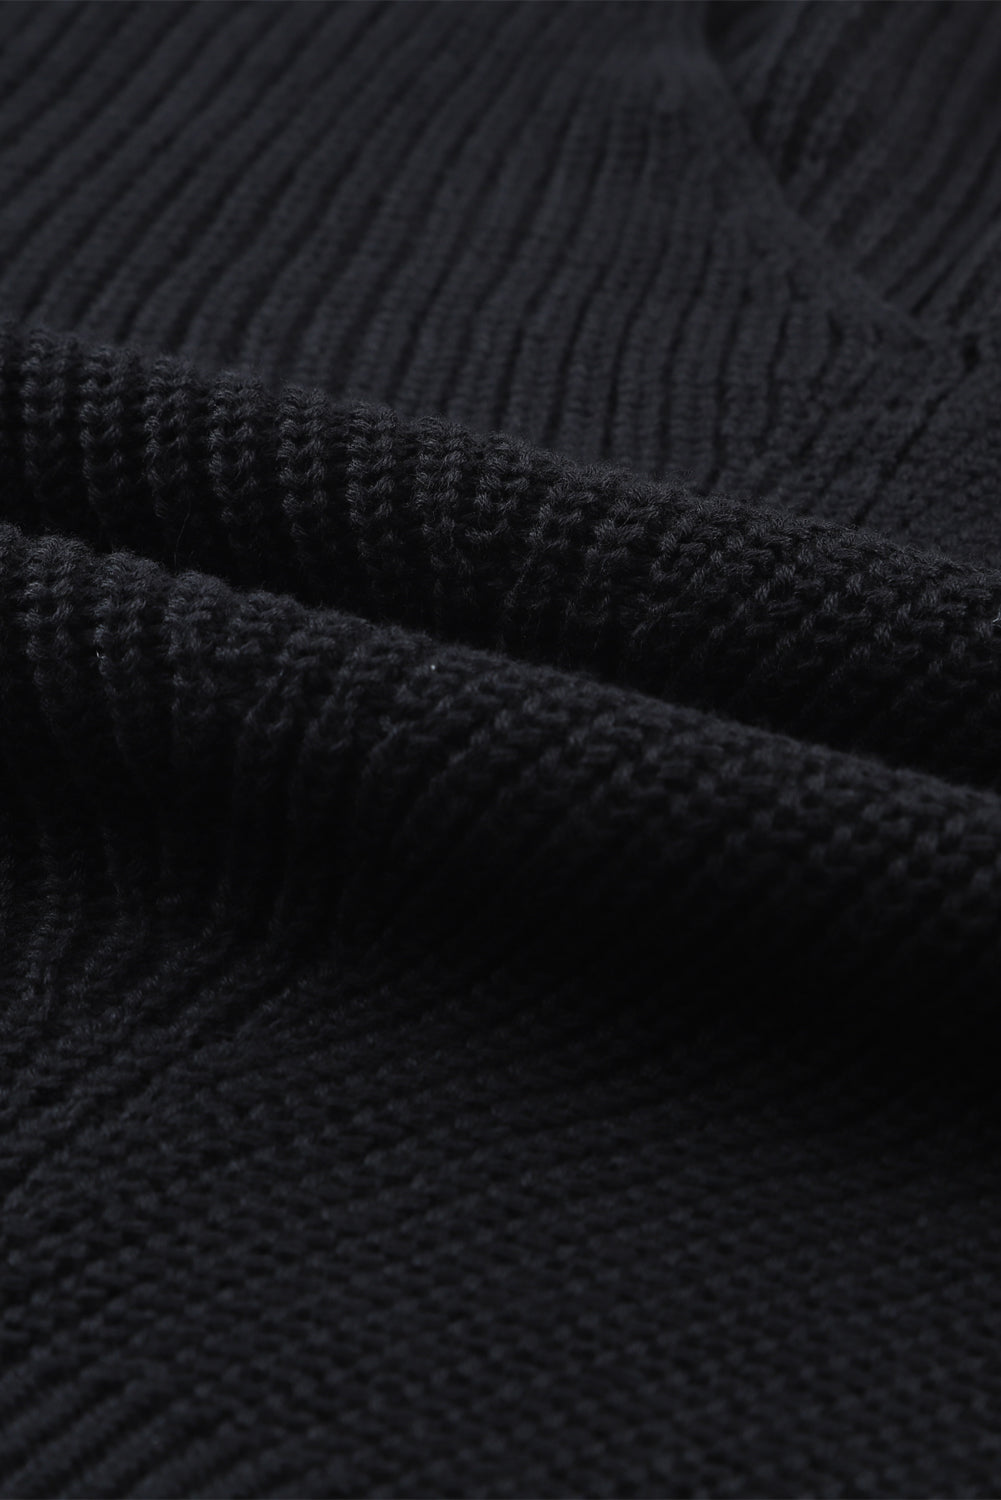 Crni rebrasti pleteni džemper s V izrezom